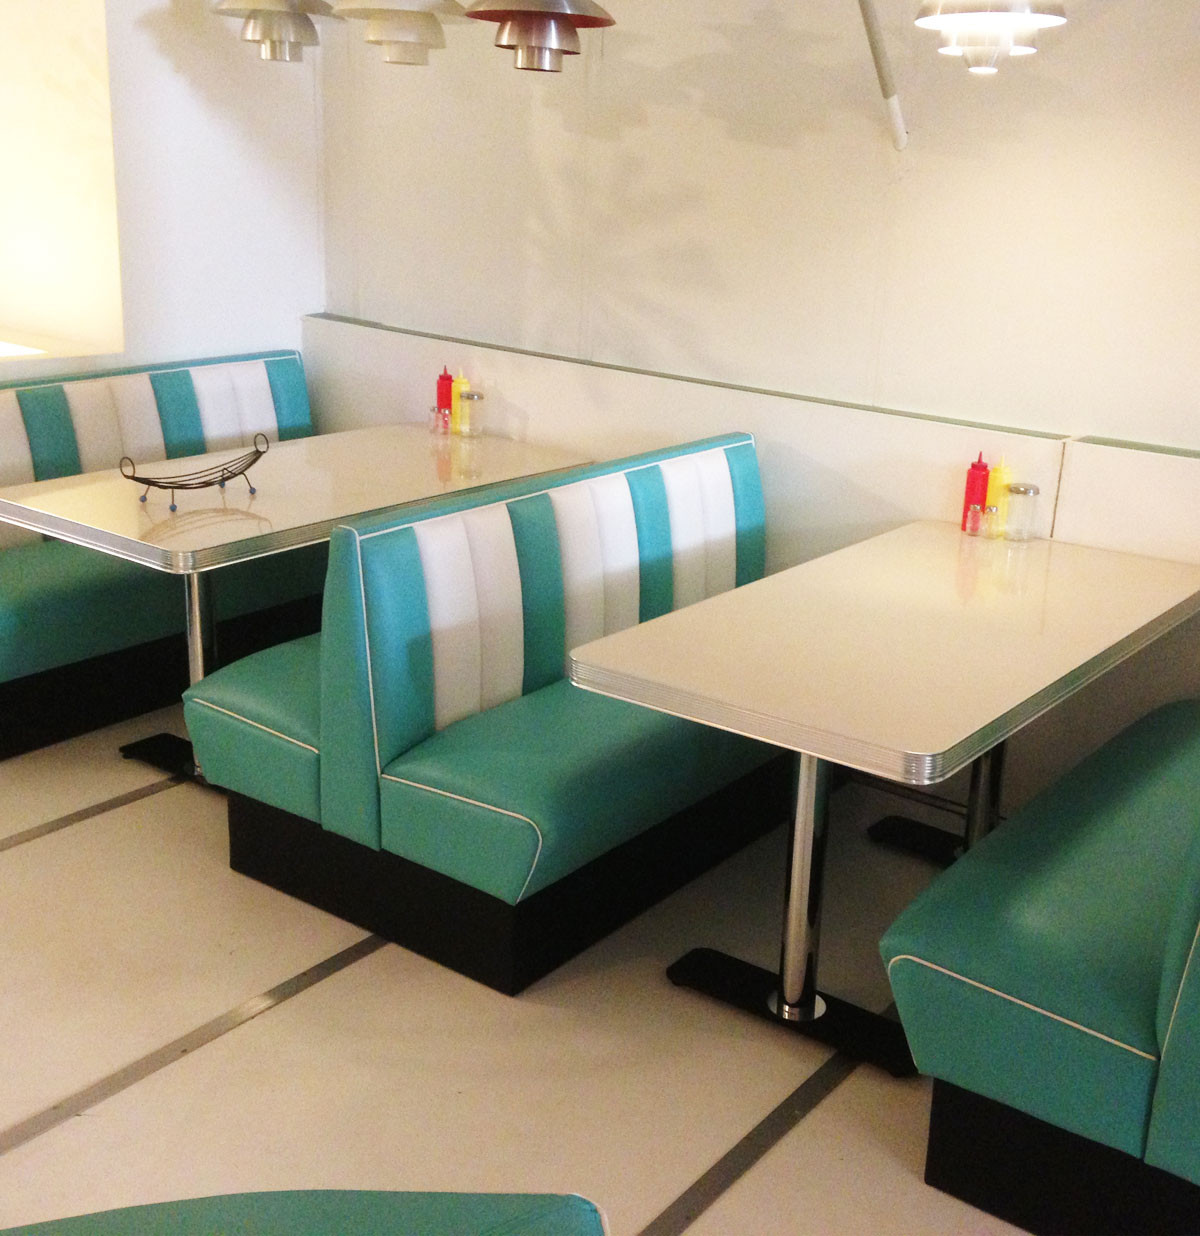 Bel Air Retro Diner Set Turquoise